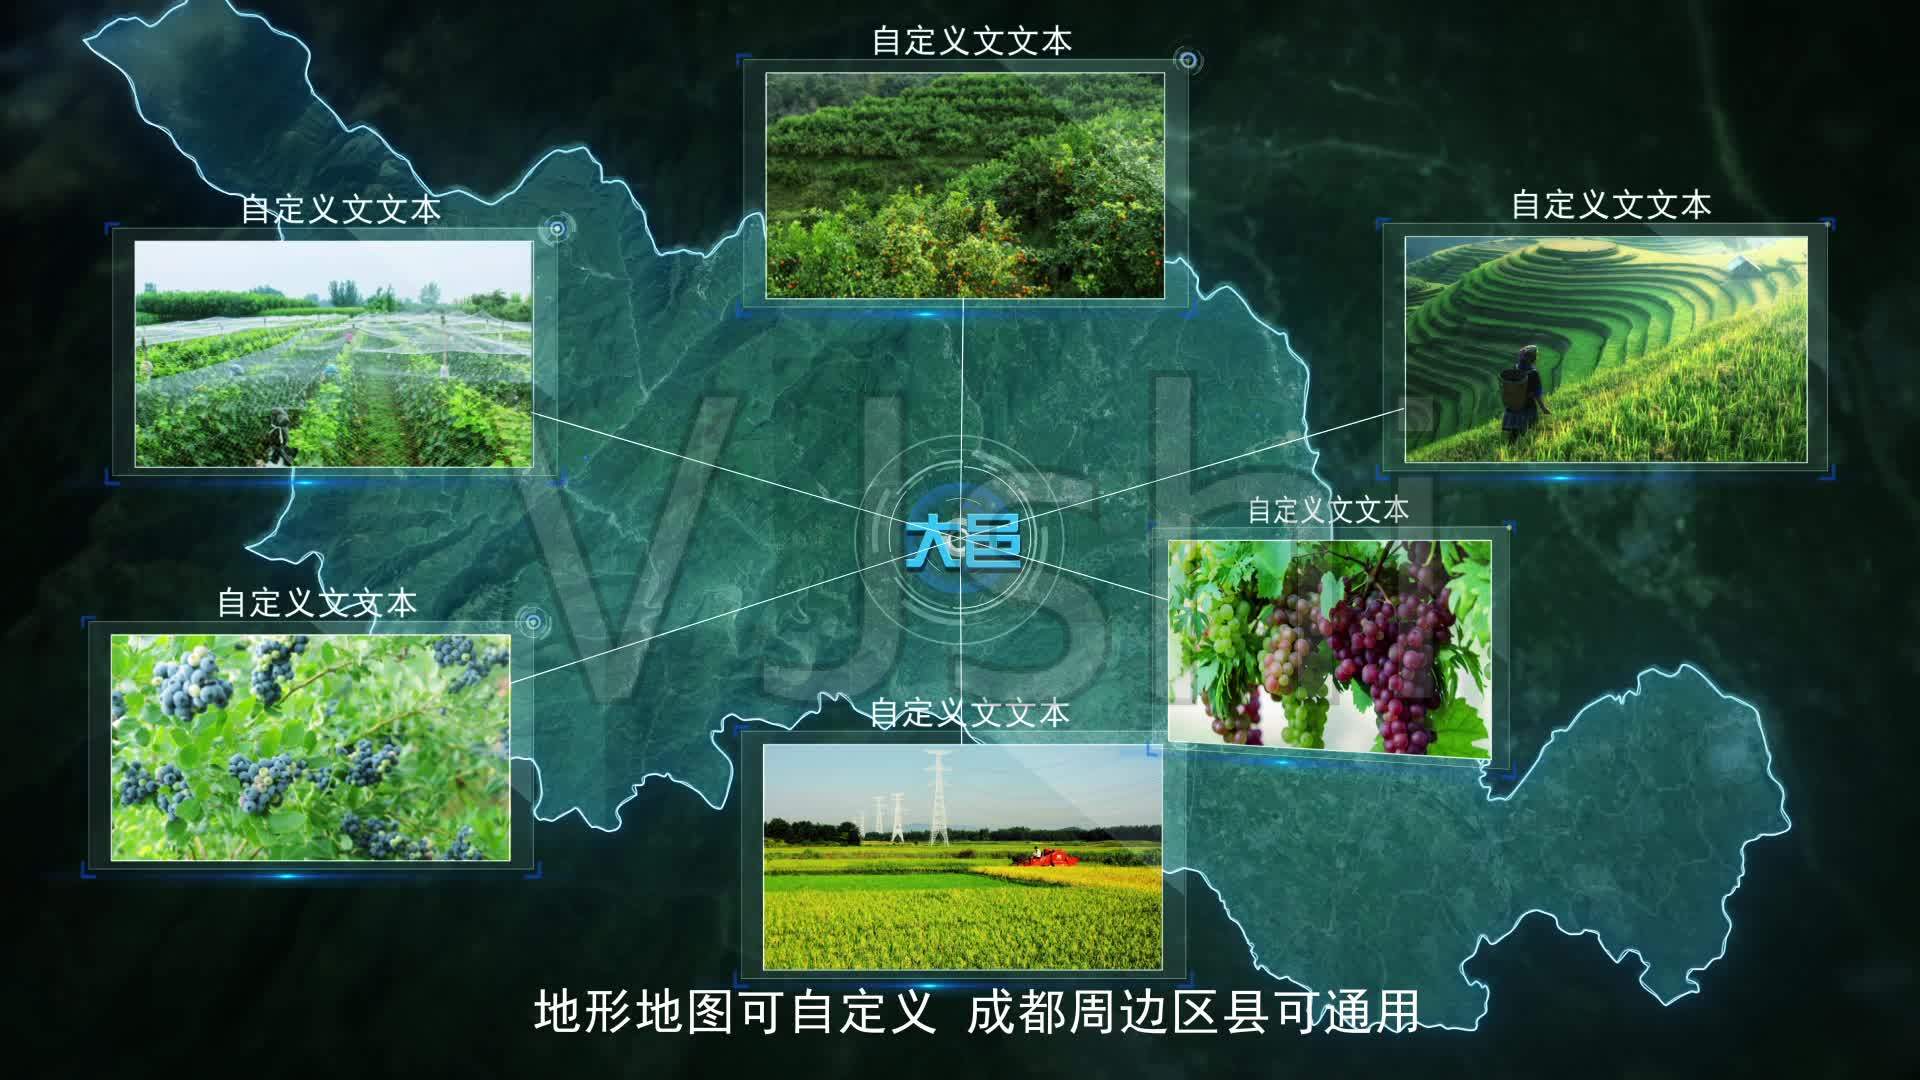 成都大邑农业农村区产品产业图文展示_1下载(编号:2801959)_AE模板